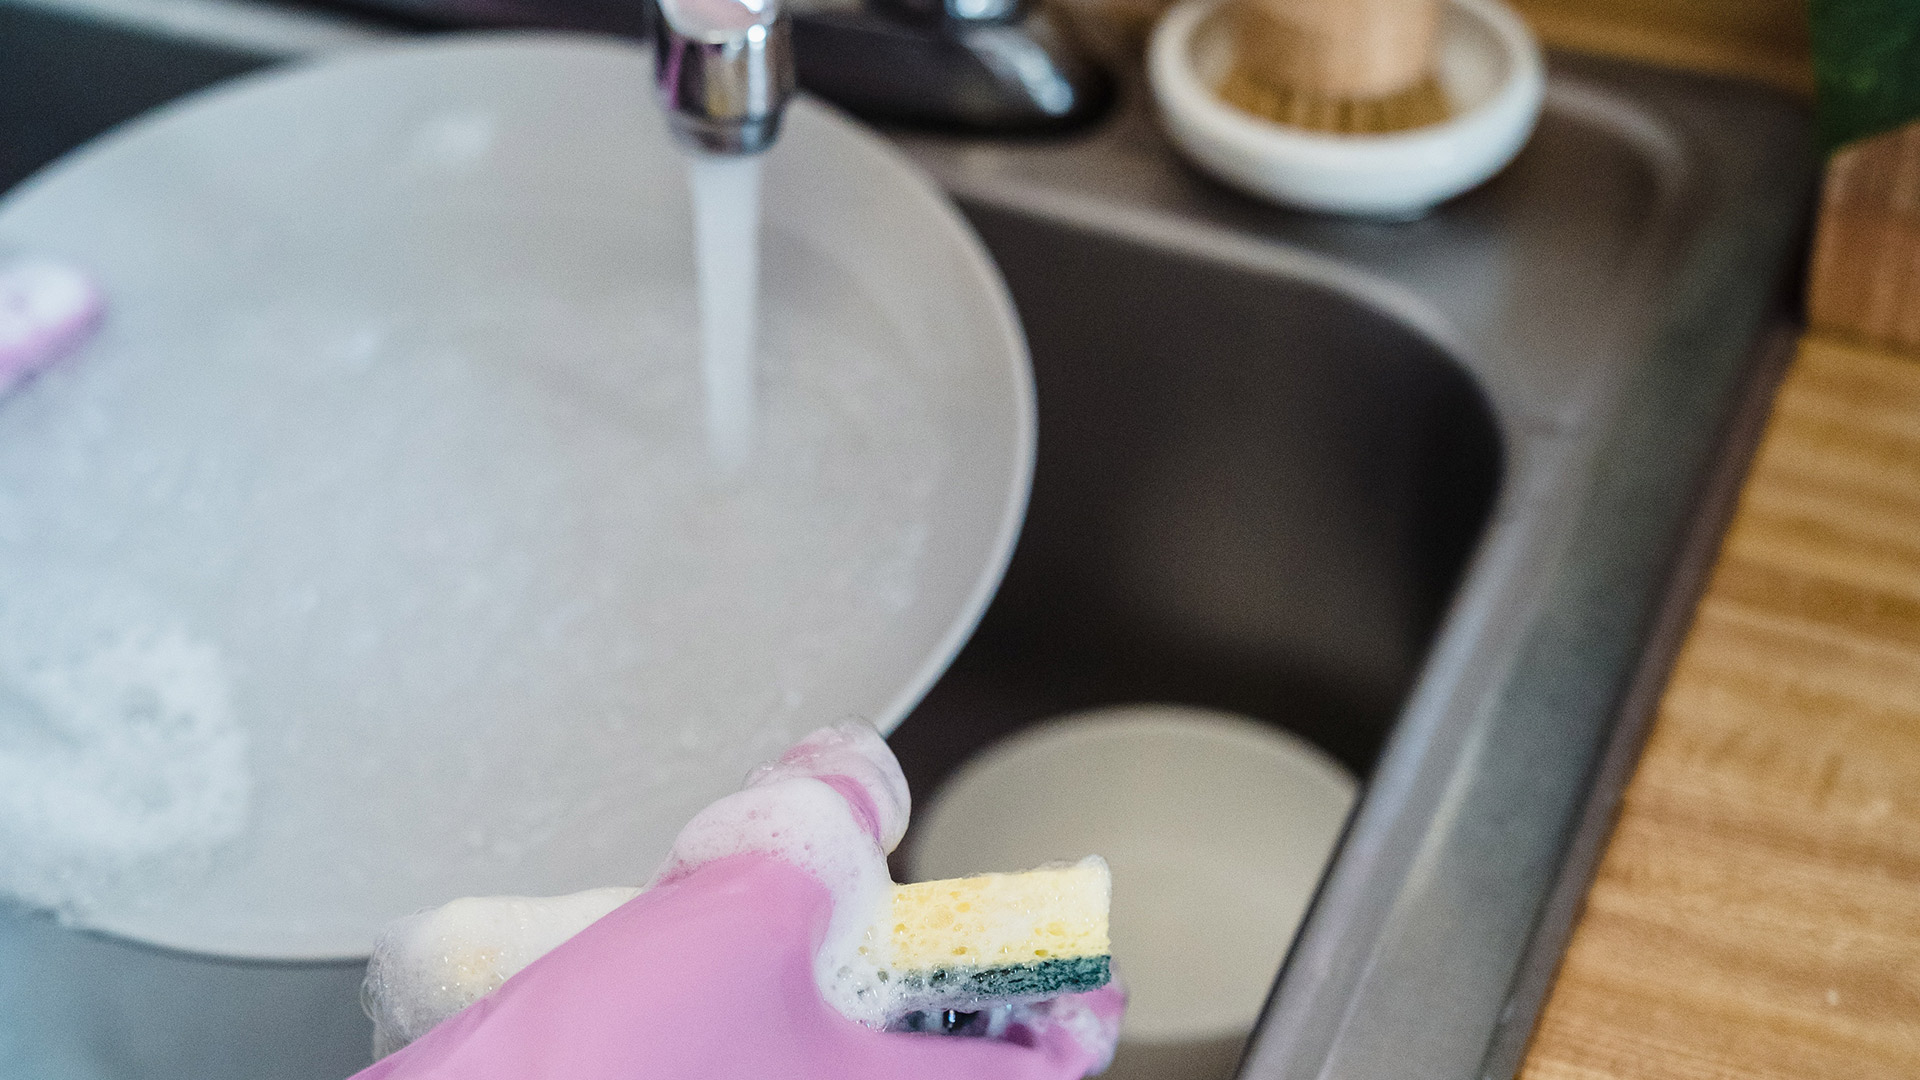 Trapos, esponjas y utensilios de cocina: cómo limpiar correctamente “la casa” de las bacterias